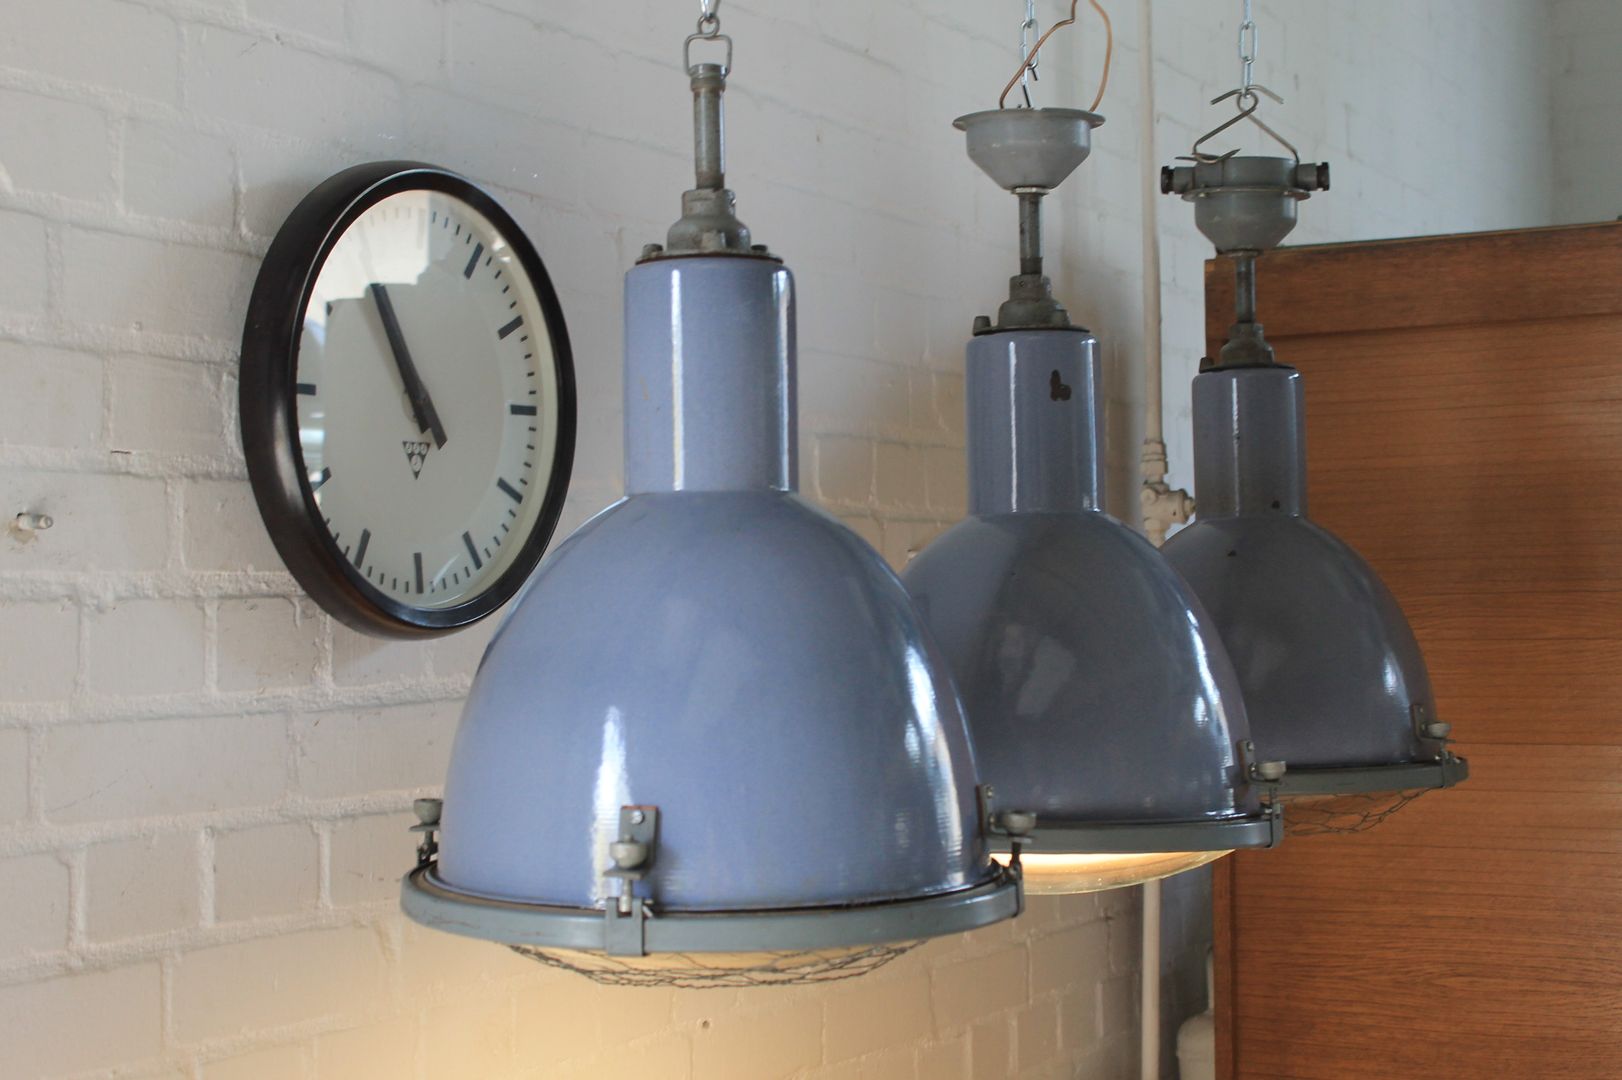 "DOVE" Fabriklampe Design Industrie Lampe Emaille Blau Vintage, Lux-Est Lux-Est Commercial spaces Kim loại Văn phòng & cửa hàng